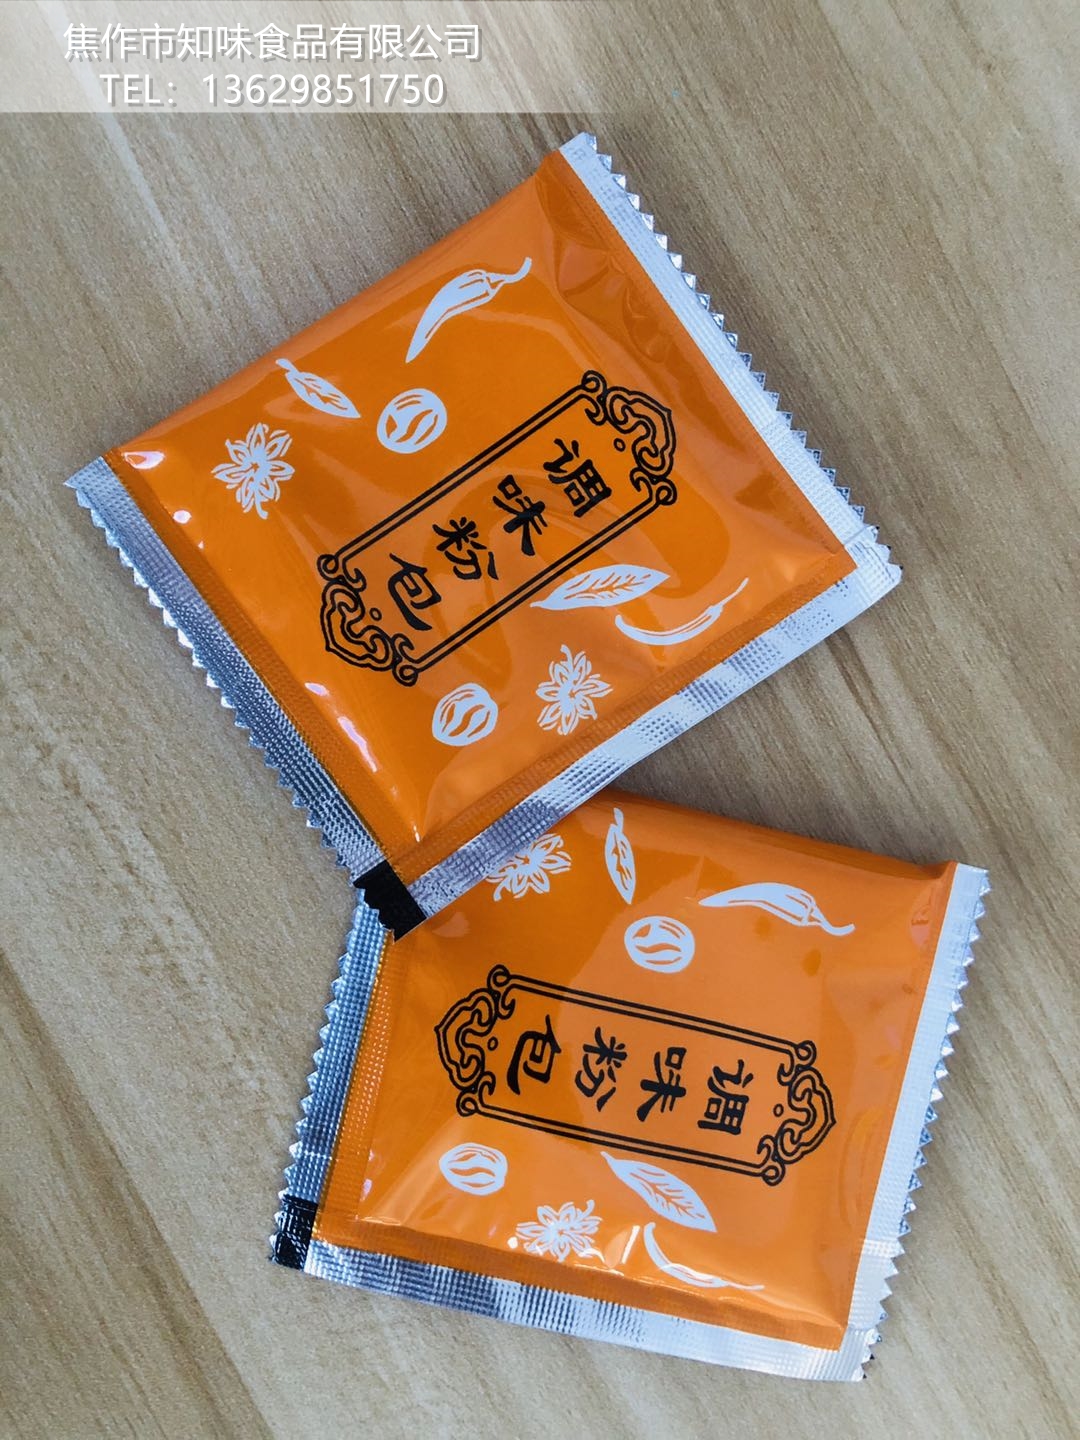 小包装馄饨调味包 葱香排骨风味饺混沌汤料包 调味包贴牌OEM加工